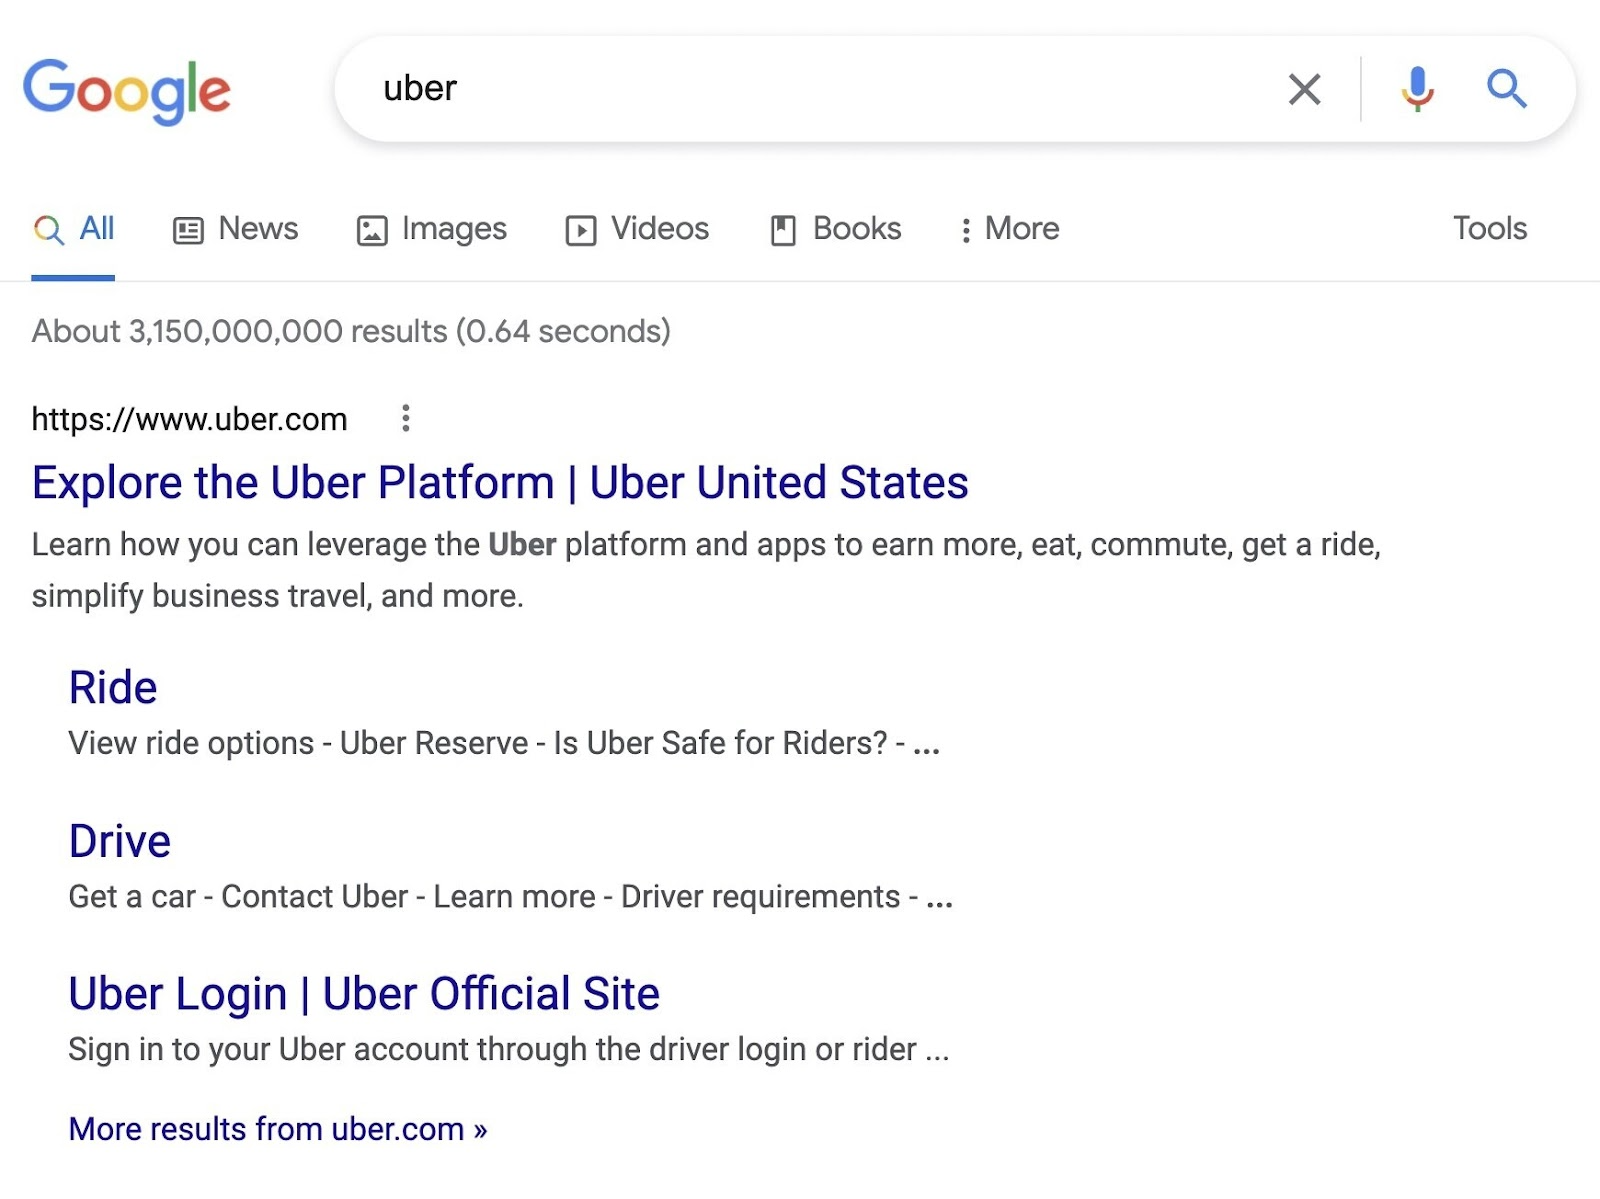 Google SERP for “Uber”